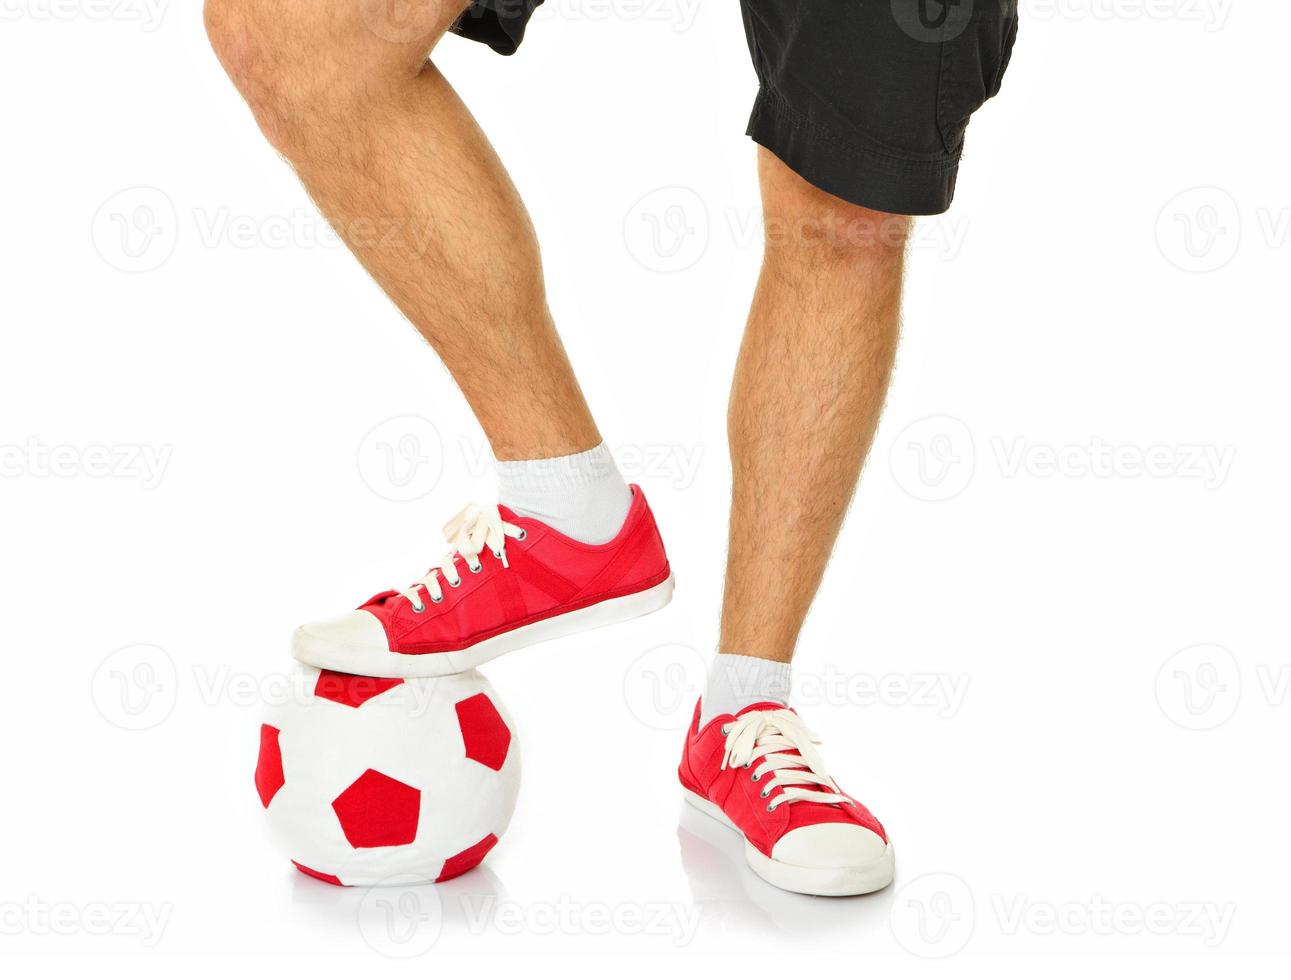 les jambes d'un footballeur photo